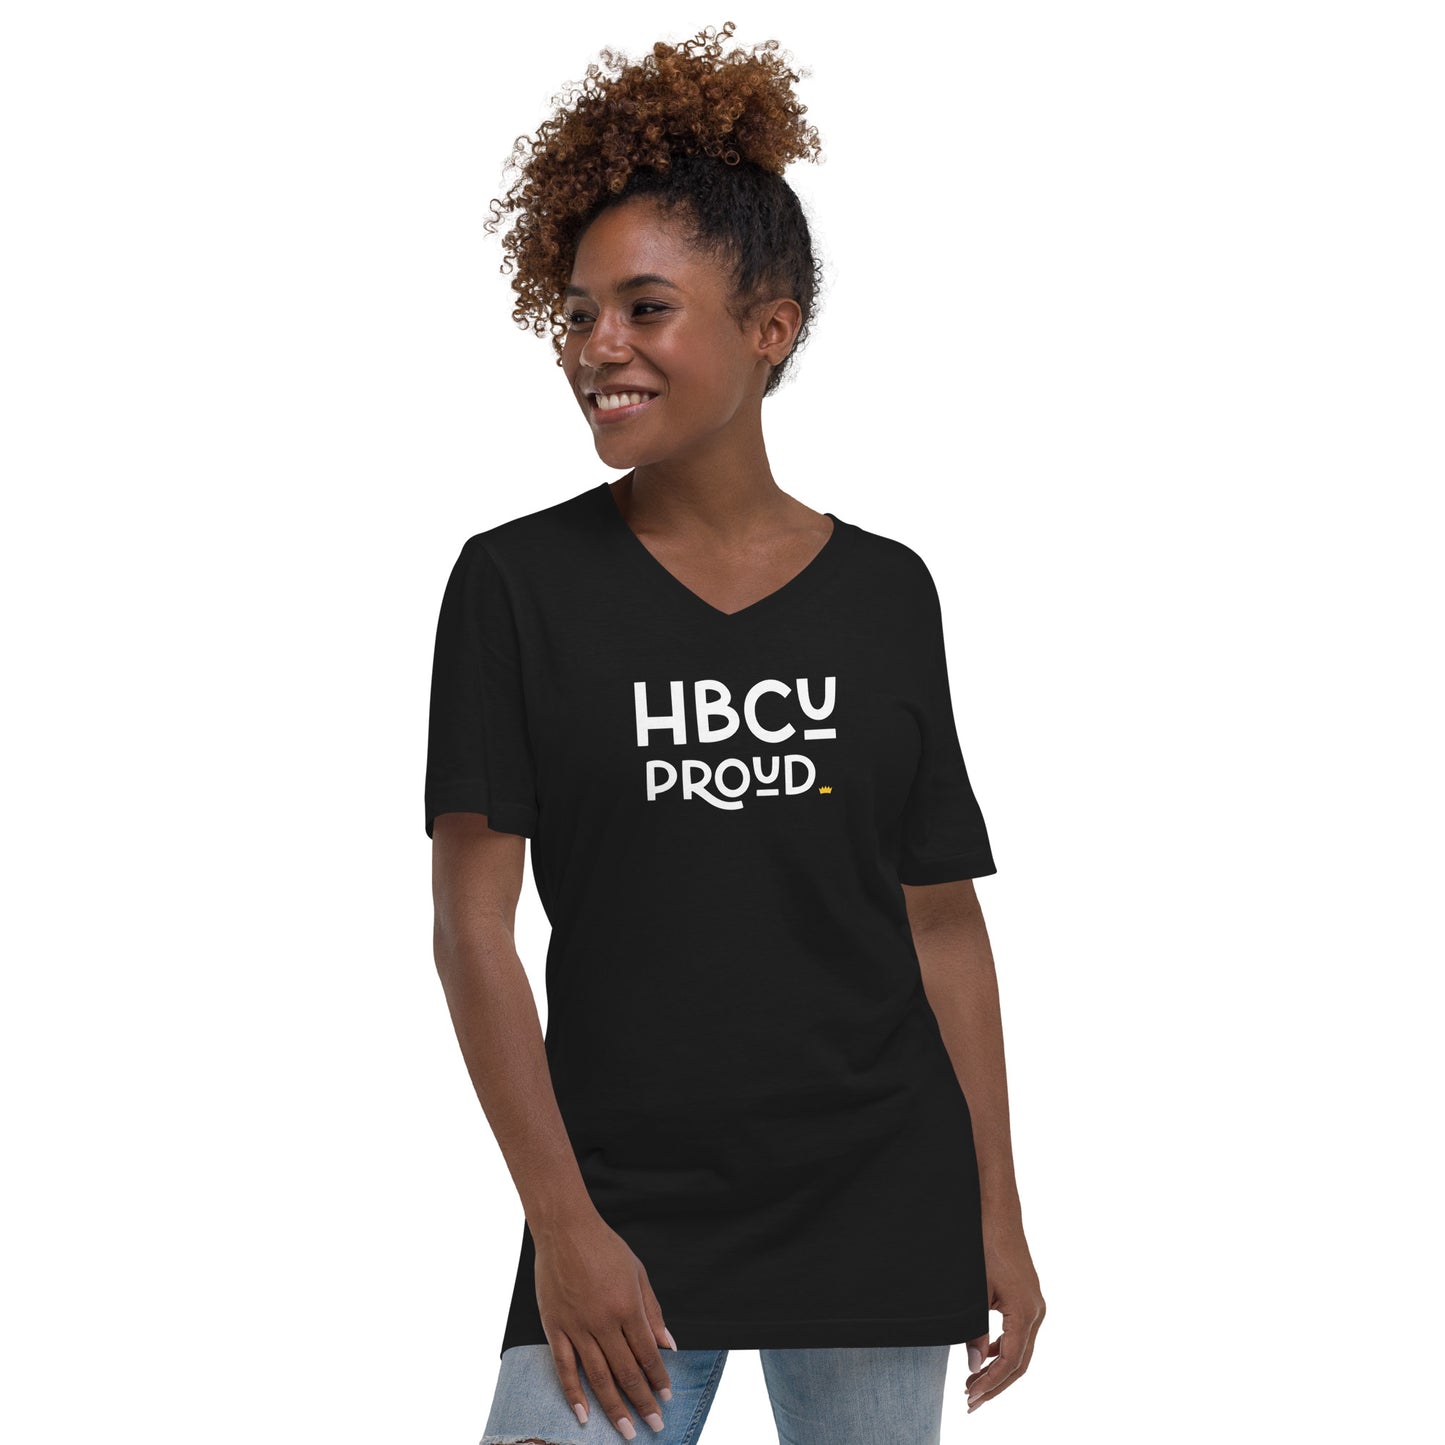 Proud - HBCU Unisex V-Neck T-Shirt